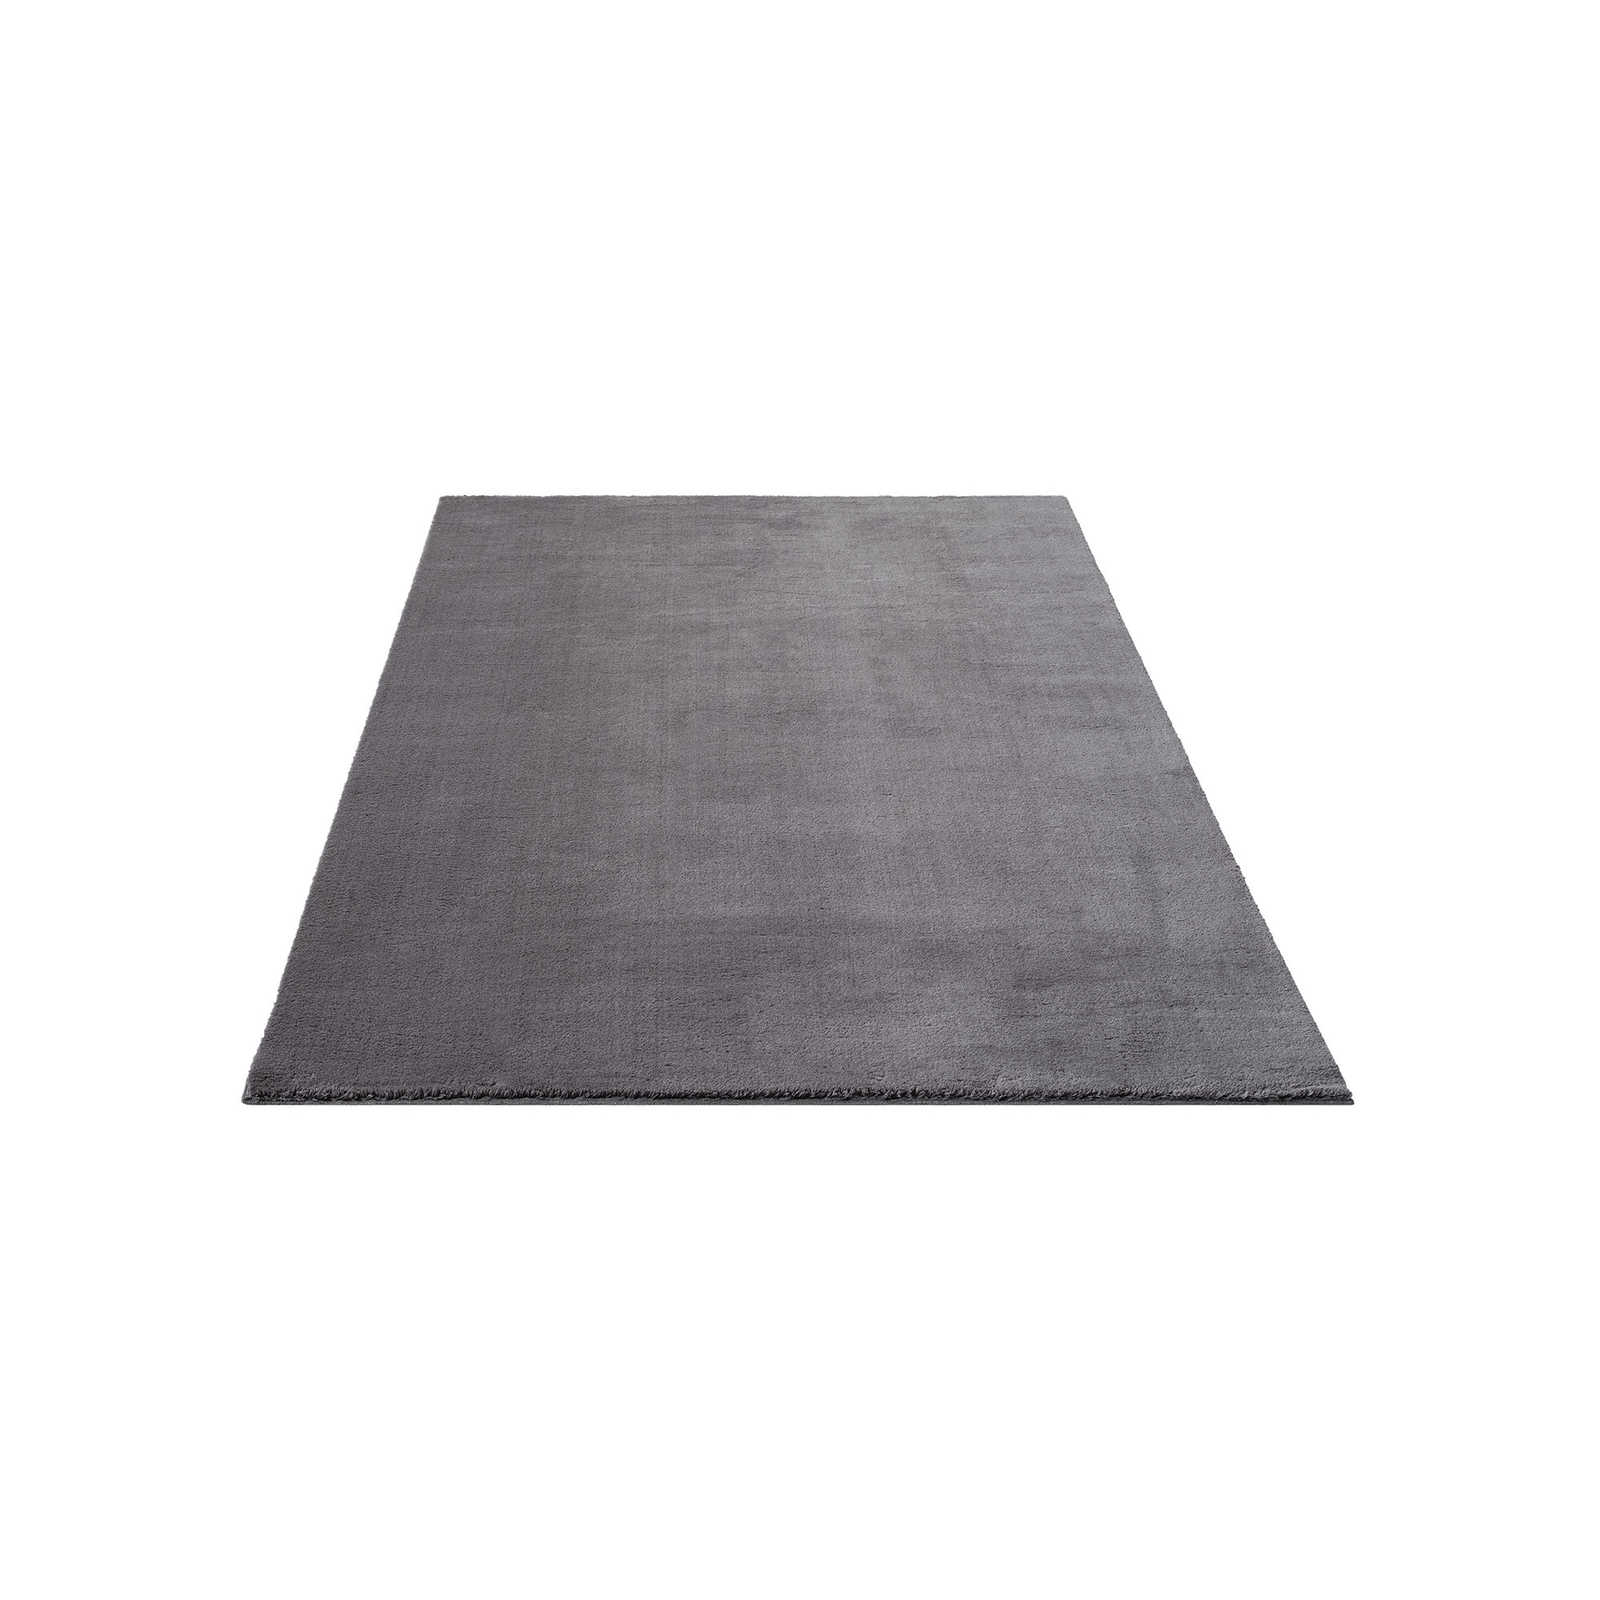 Flauschiger Hochflor Teppich in Anthrazit – 230 x 160 cm
